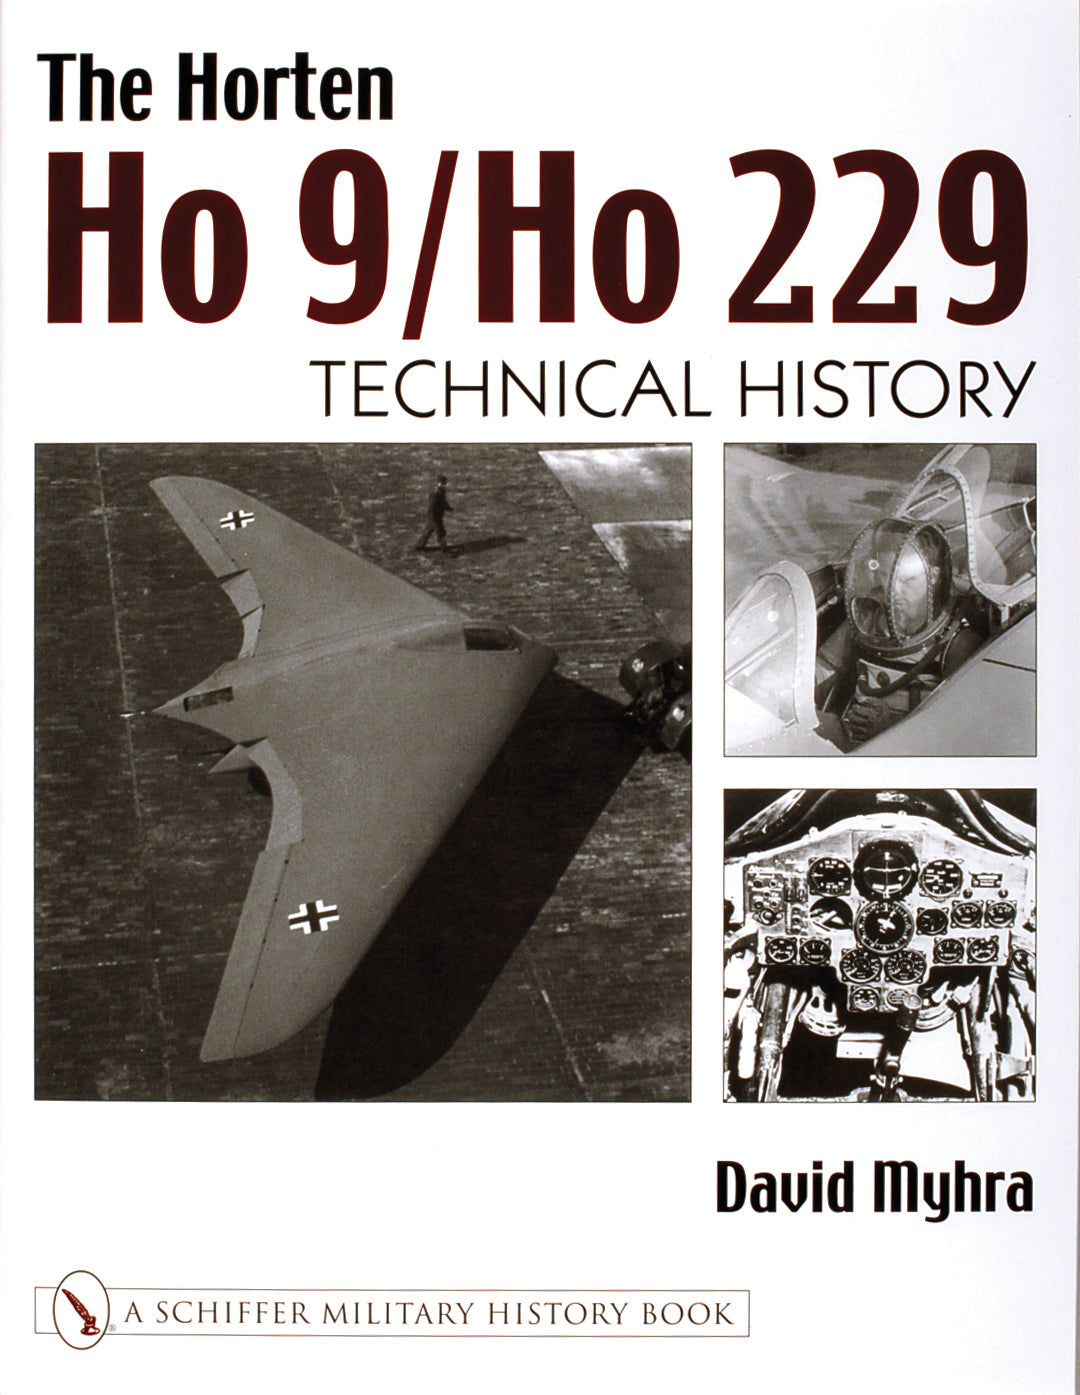 The Horten Ho 9/Ho 229